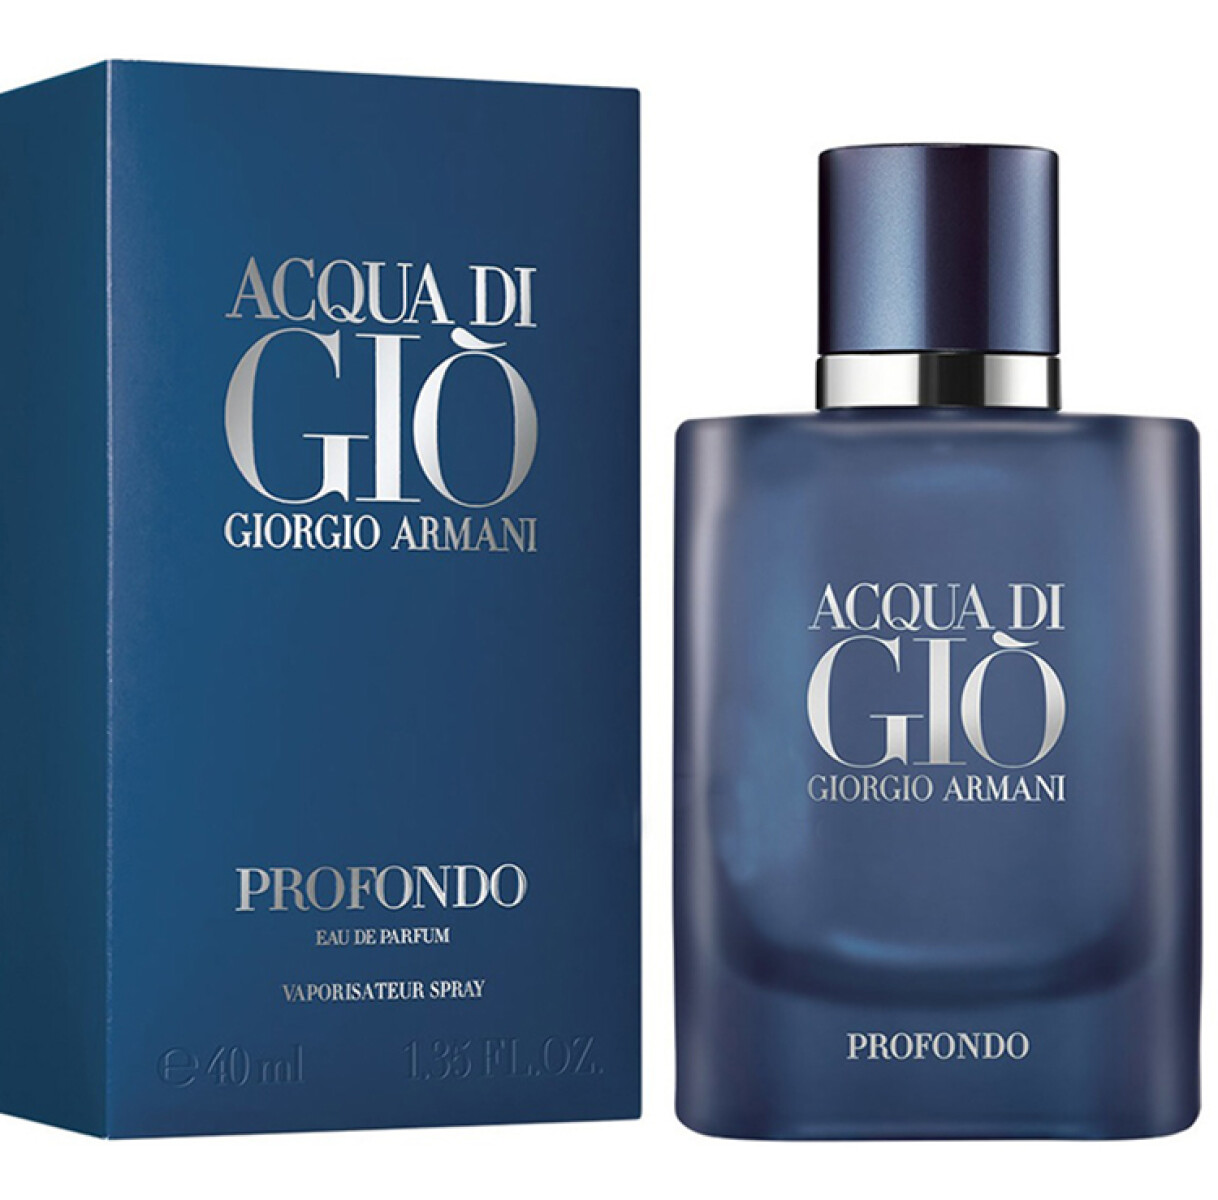 Giorgio Armani Acqua di Gio Profondo - 40 ml 